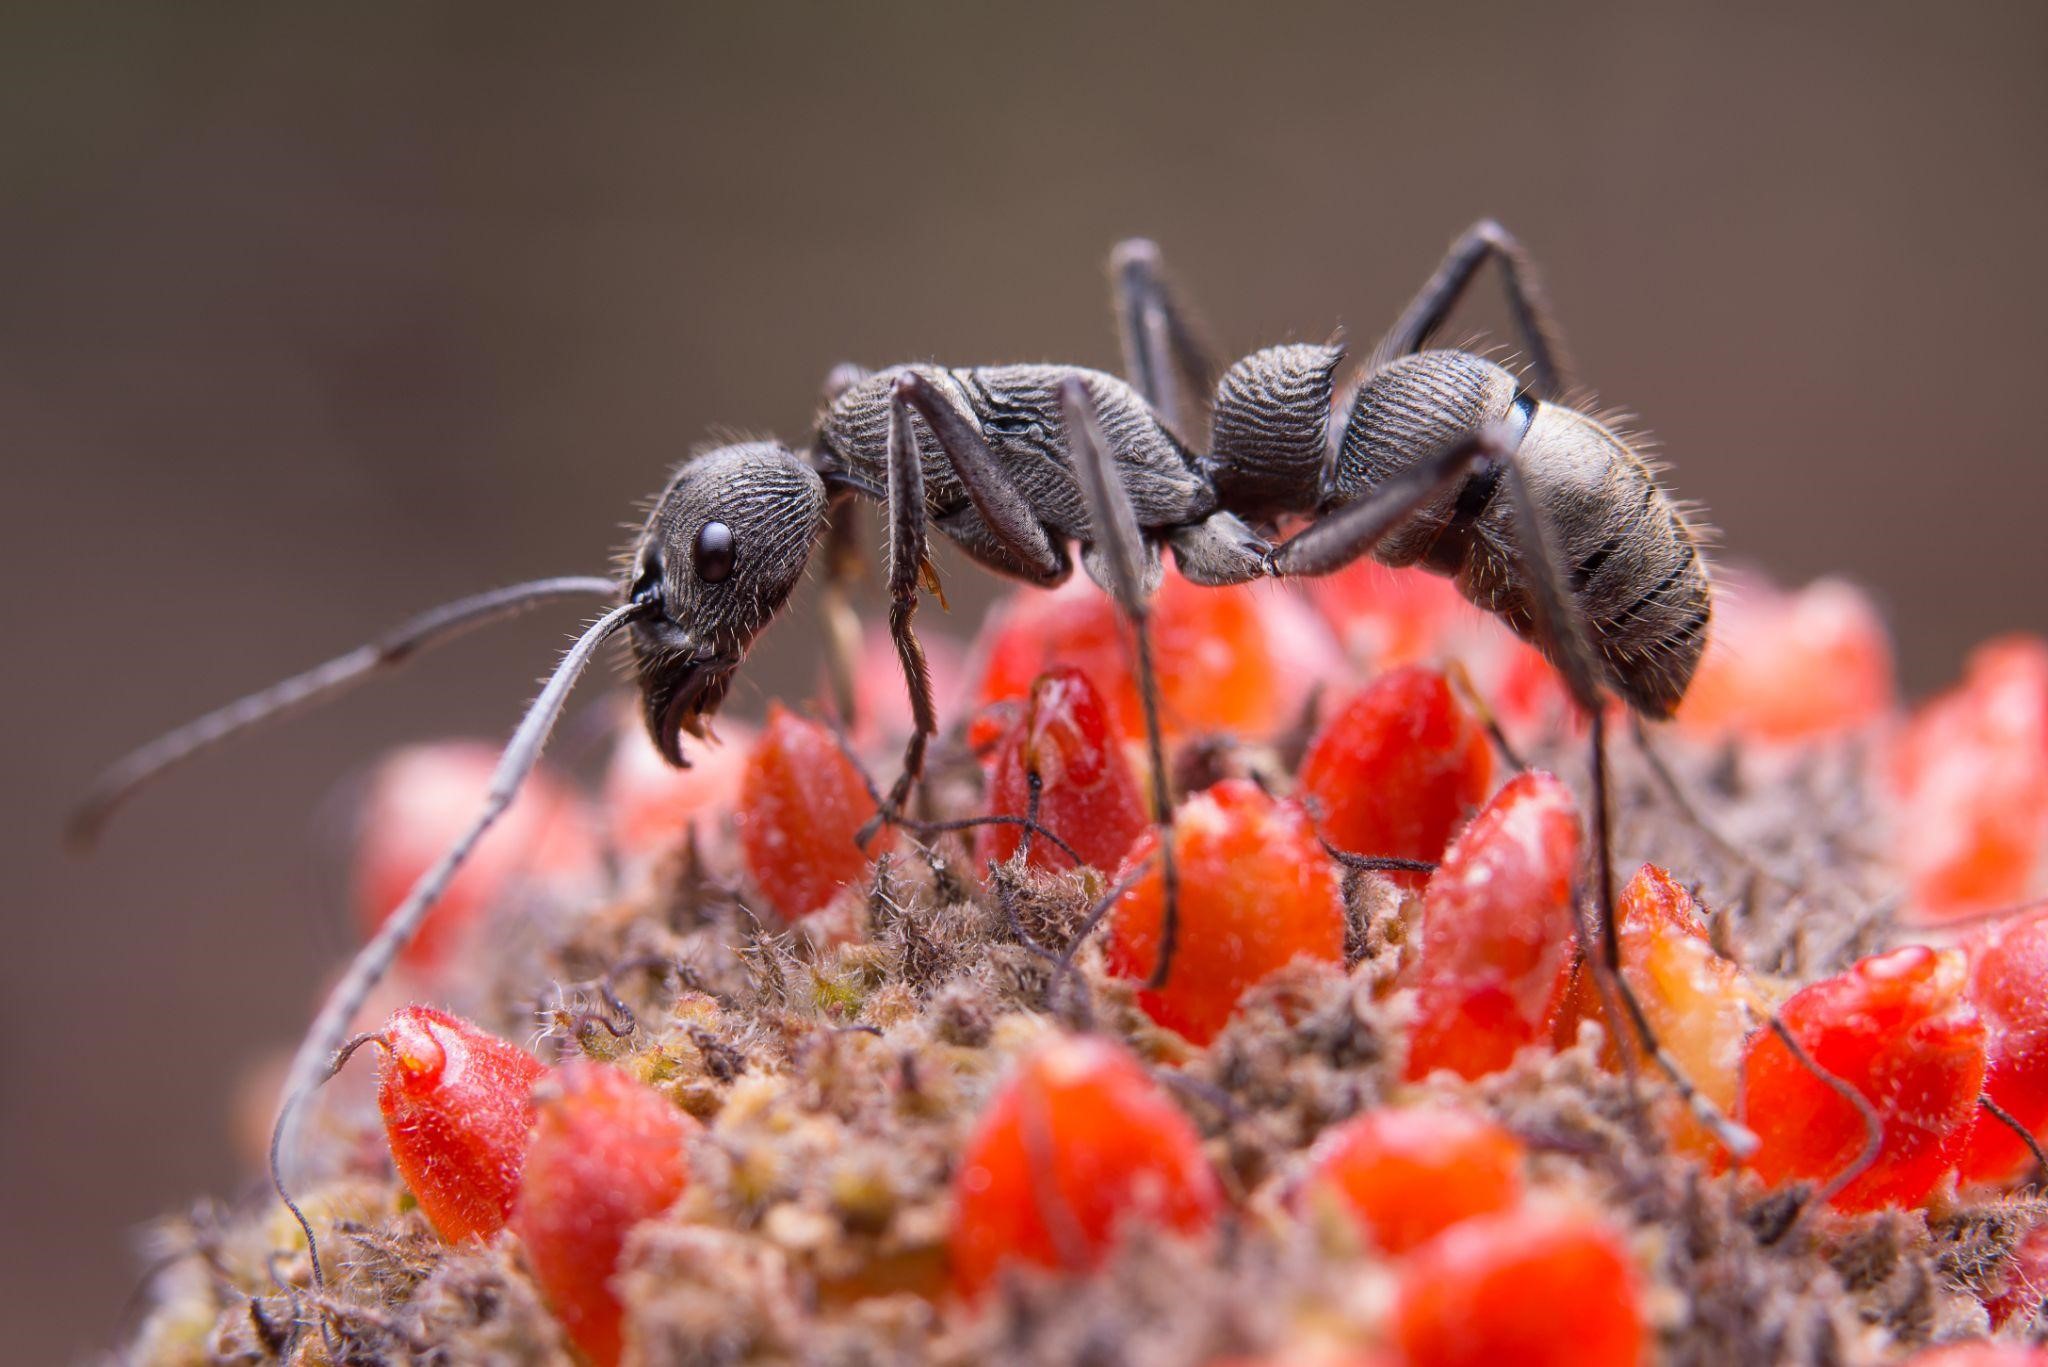 Casa com infestação de formiga: o que faço?